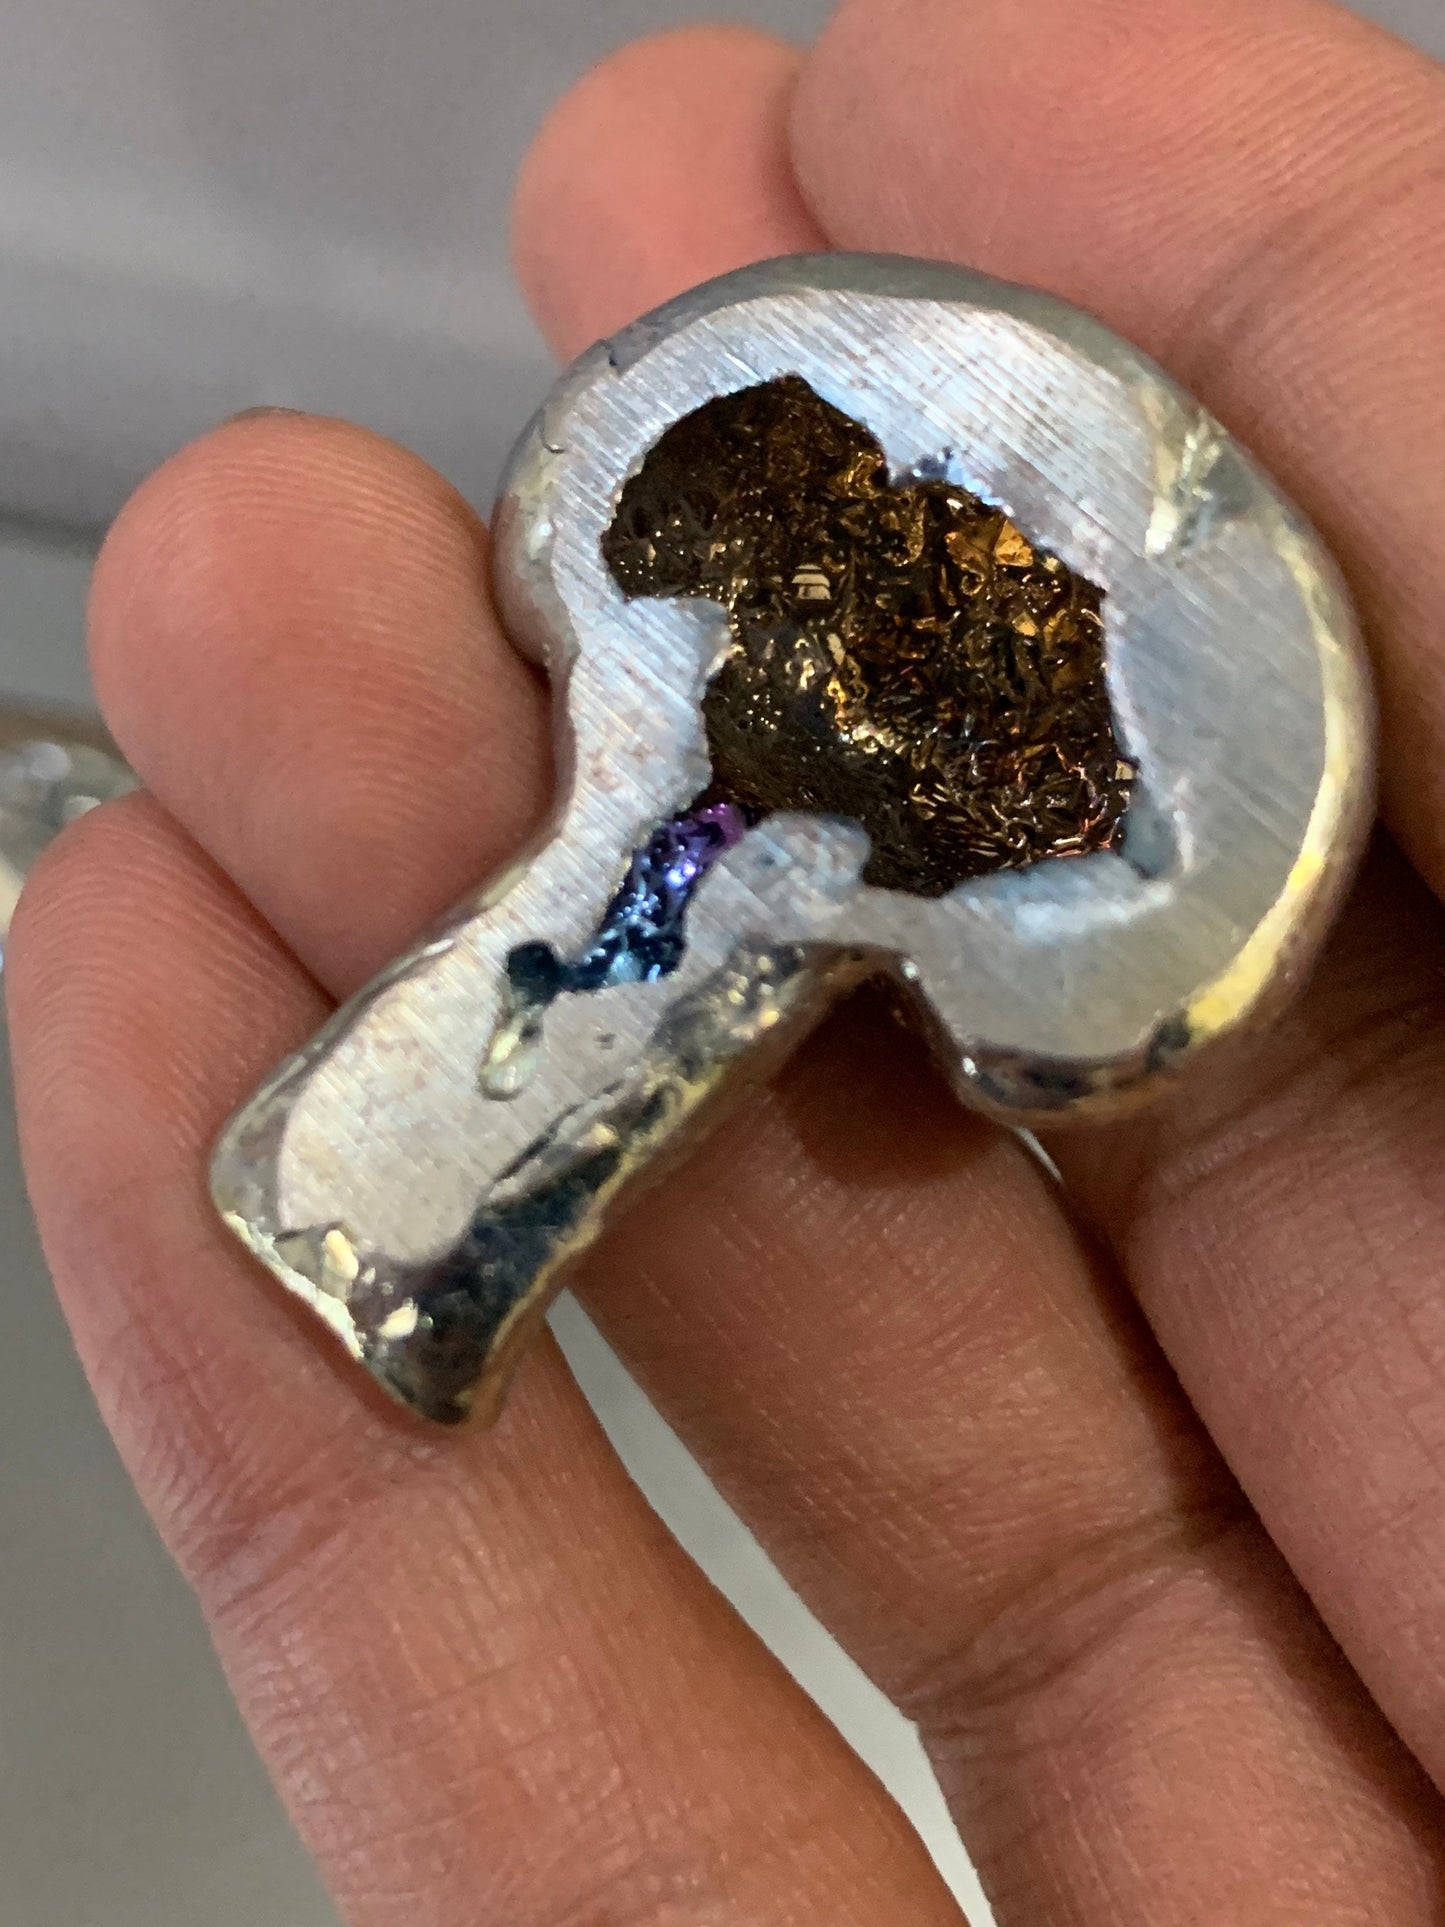 Gold Bismuth Crystal Mushroom Metal Art Sculpture